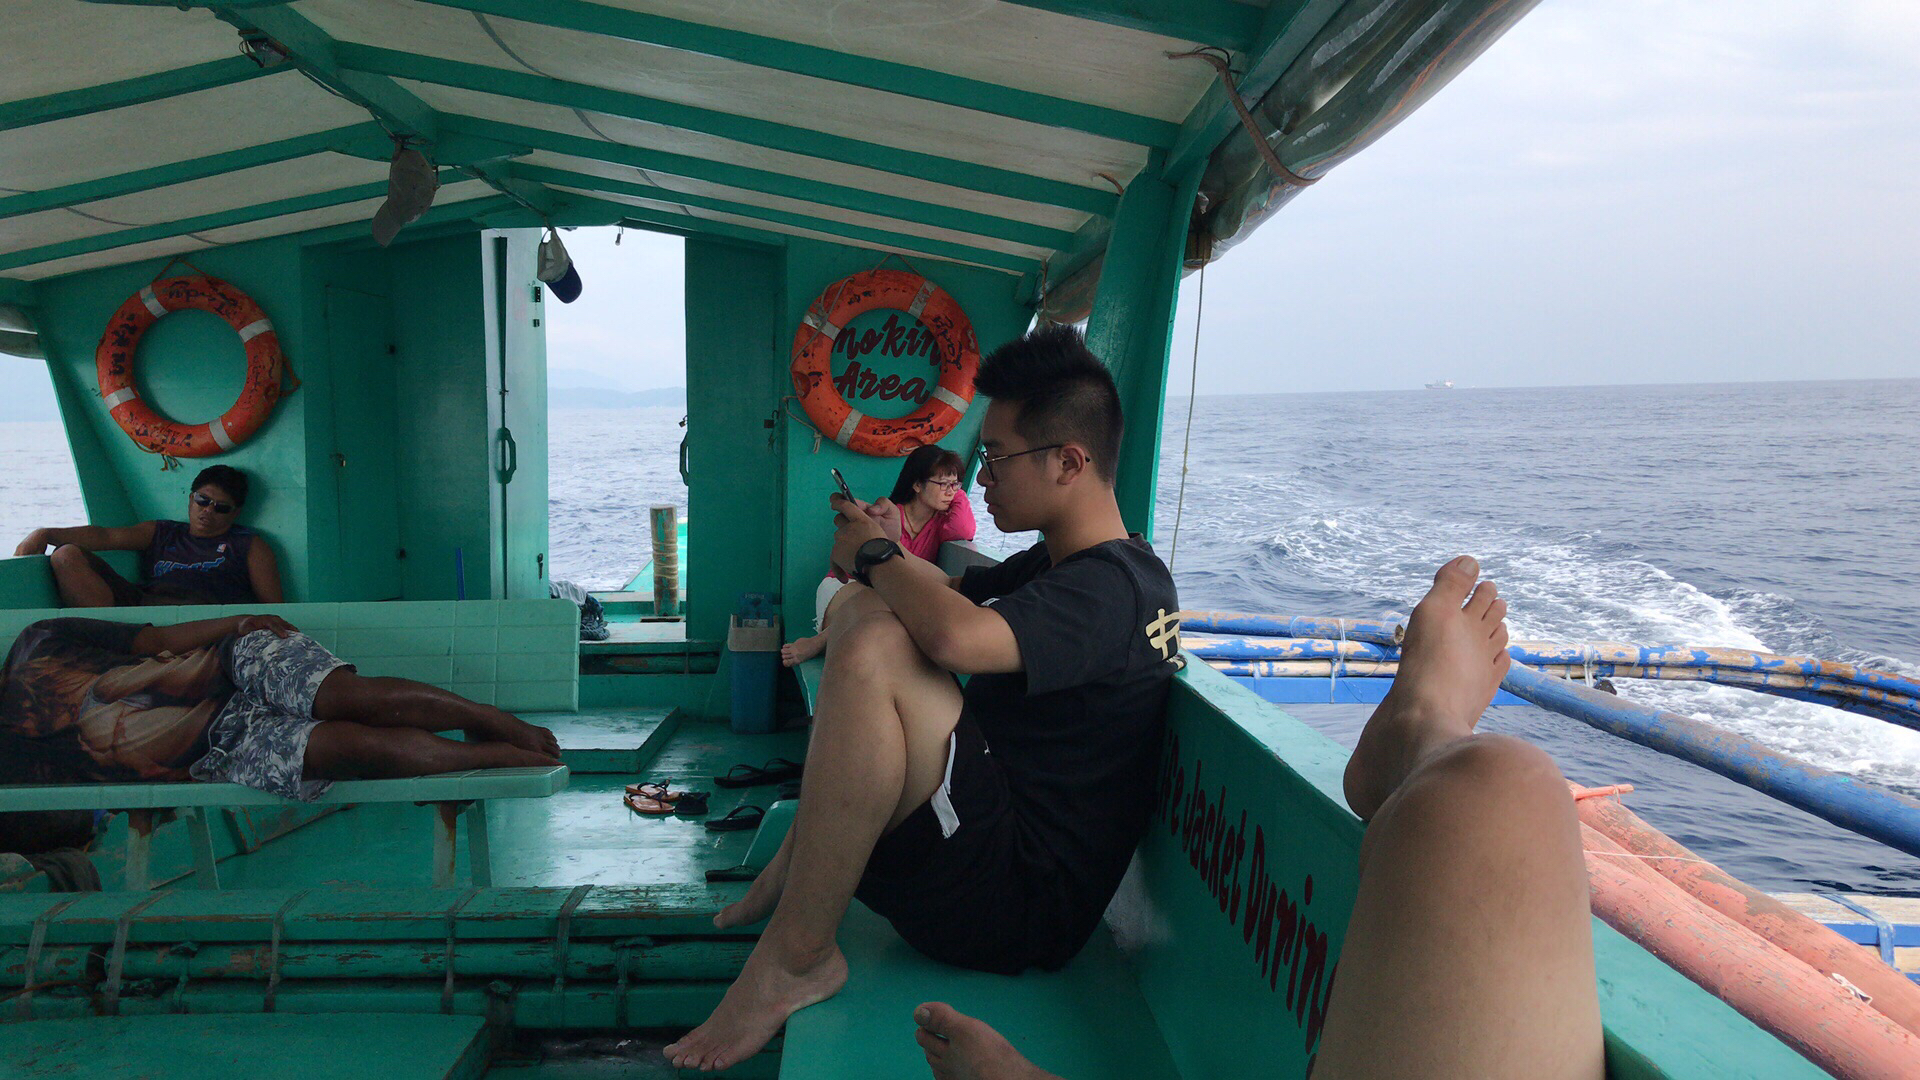 菲律宾学潜水,pg岛潜水,啥时候可以去潜水,潜水去,开心最重要✌️